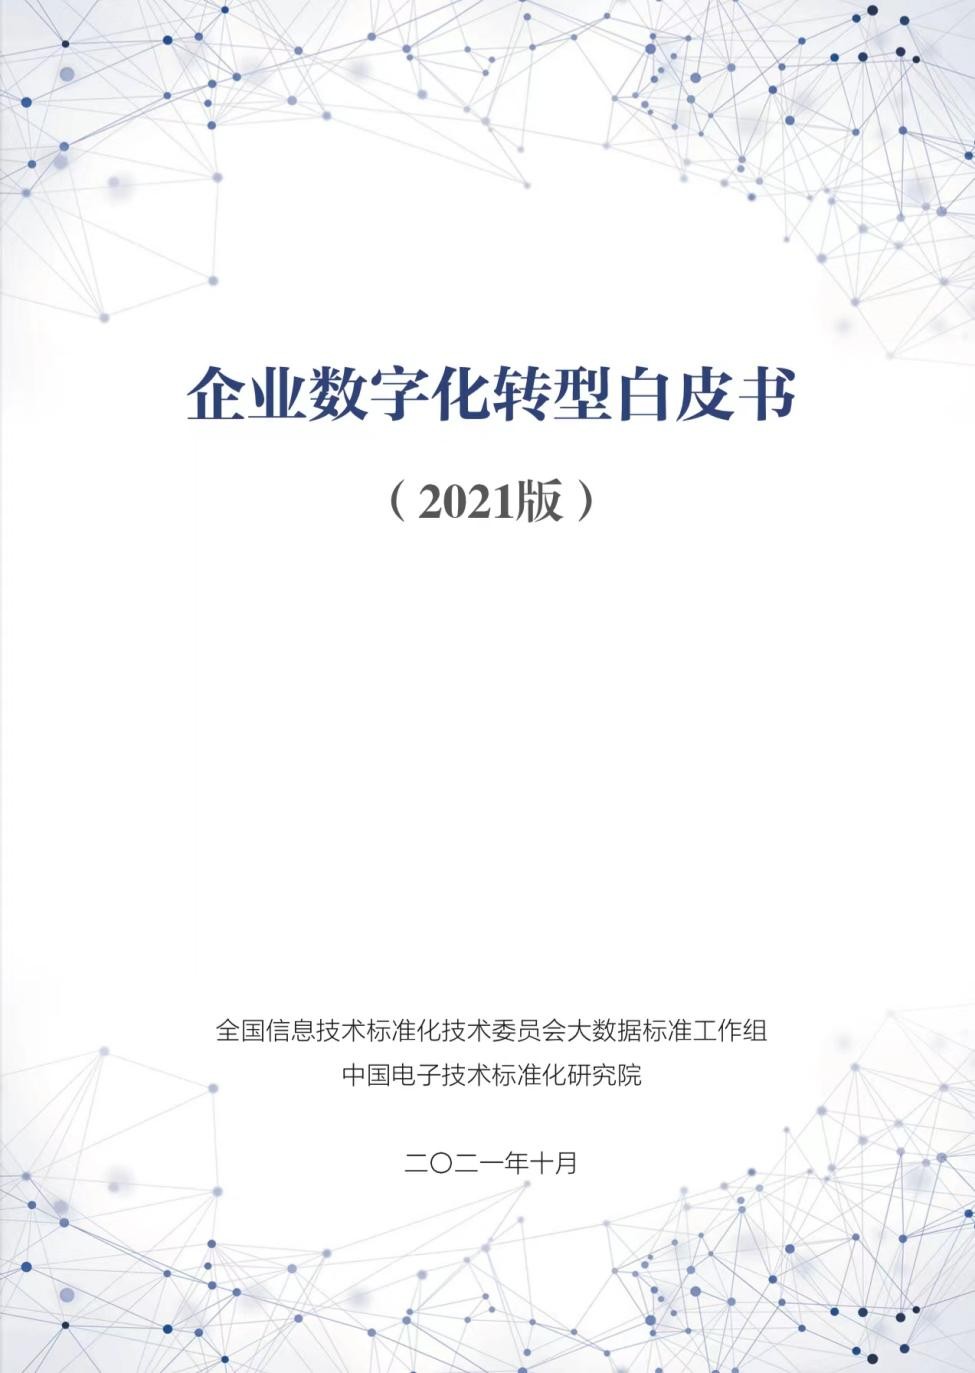 華云數據參與編制的《企業數字化轉型白皮書（2021版）》正式發布！